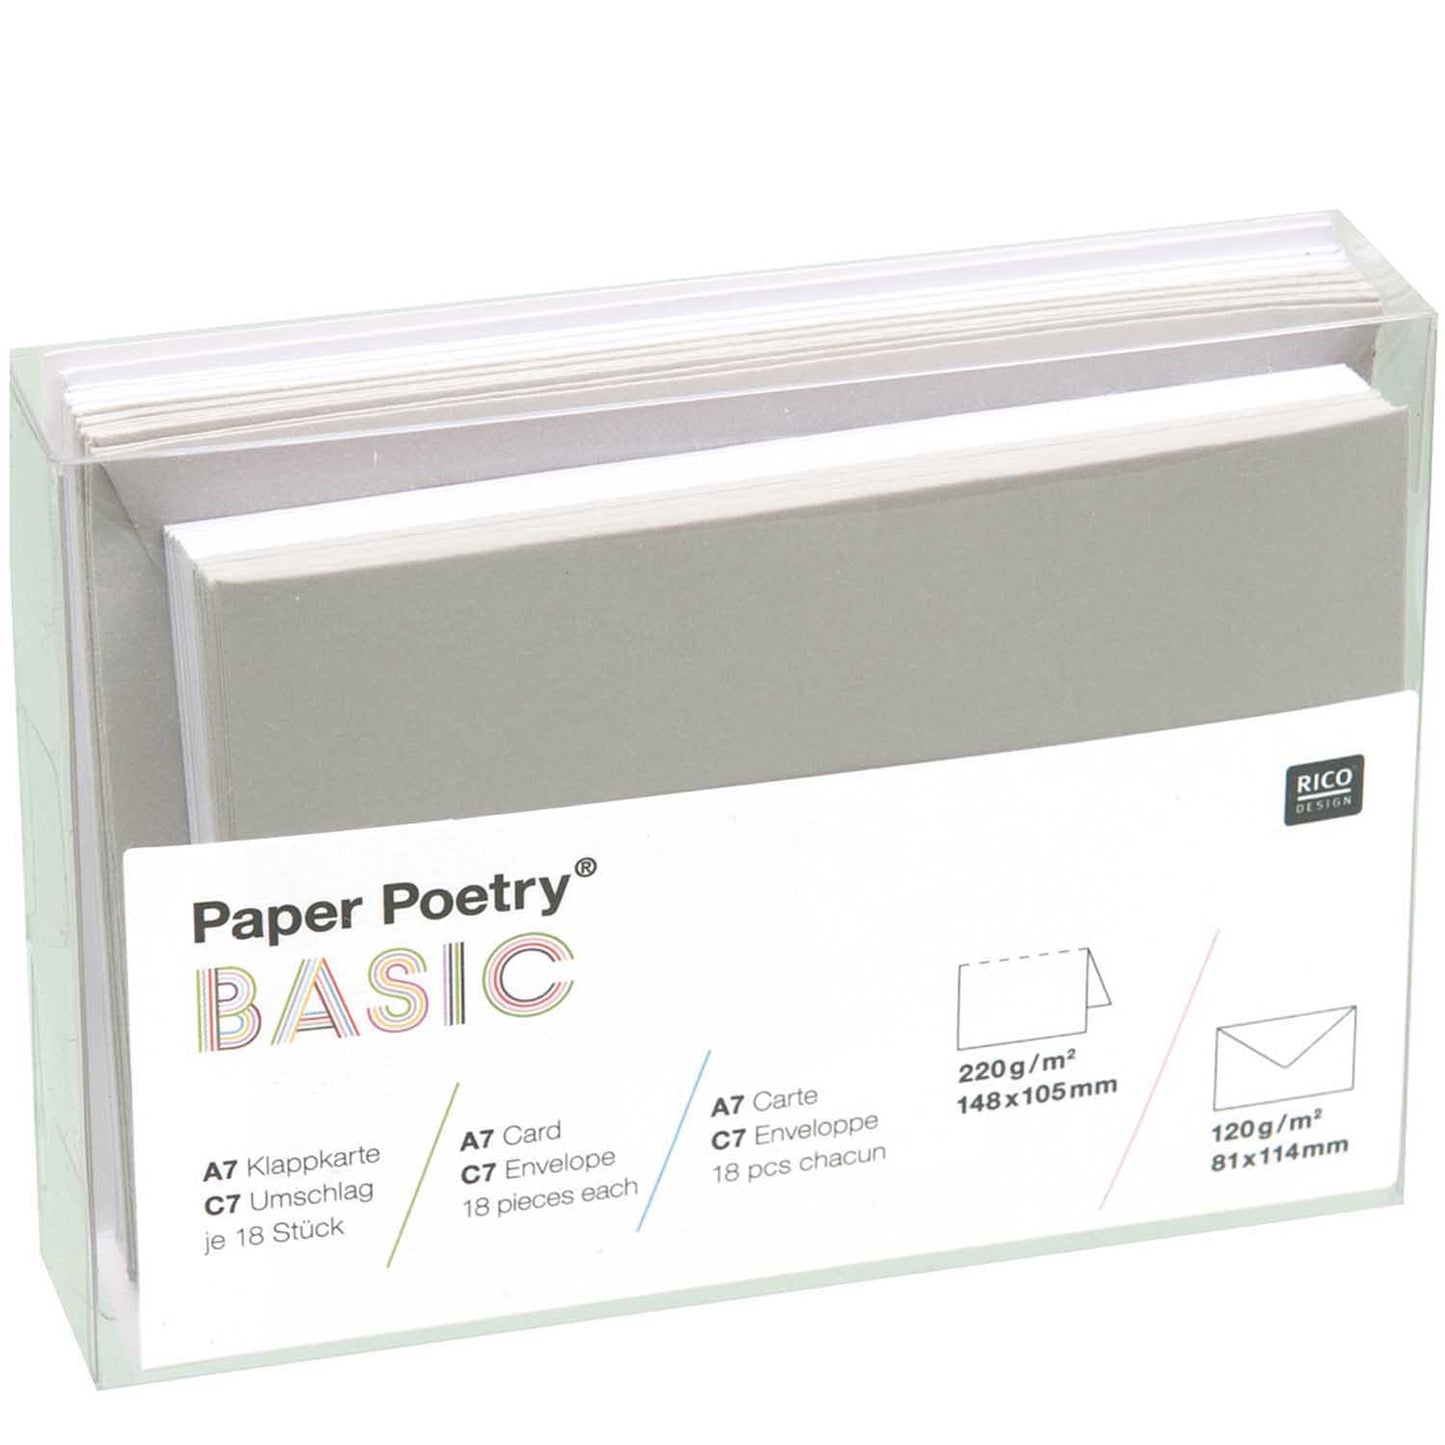 Paper Poetry, 15 Klappkarten + 15 Kuverts A7/C7, grau/ weiß von Rico Design